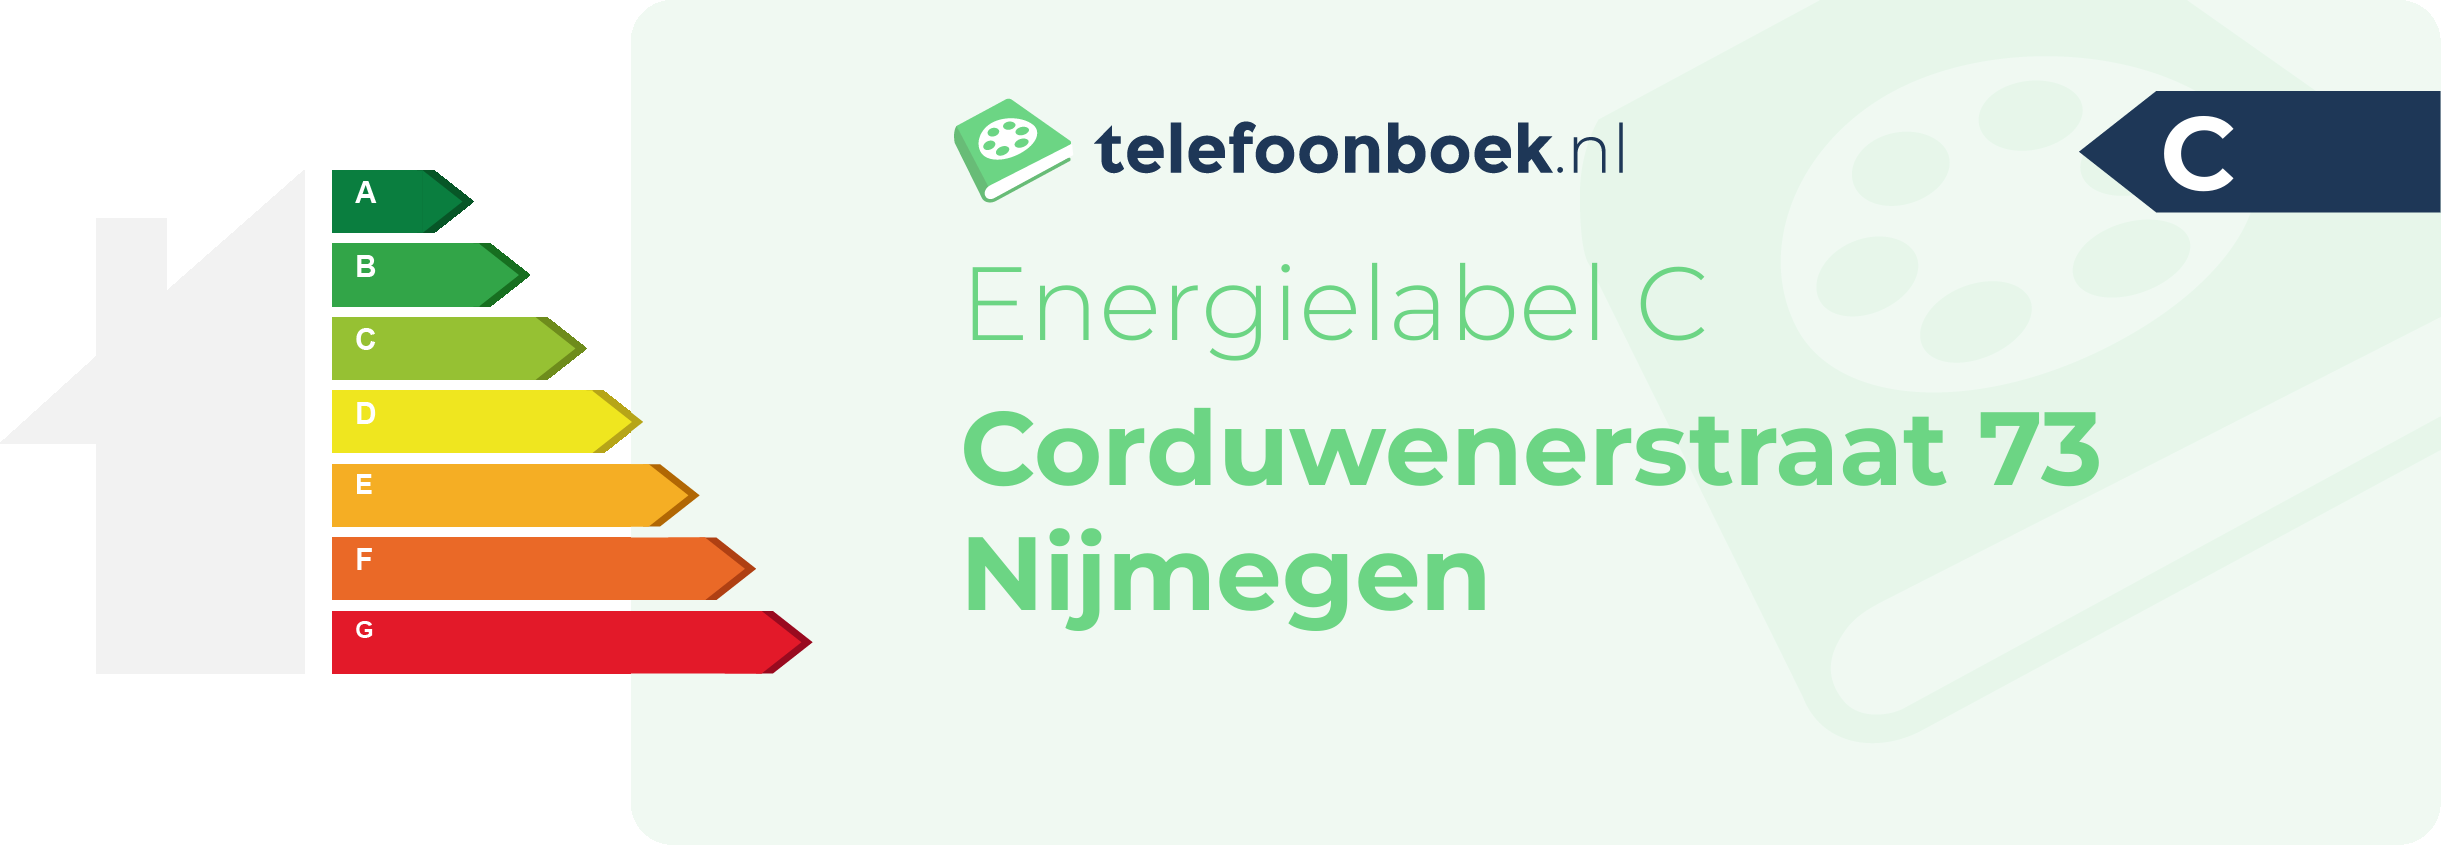 Energielabel Corduwenerstraat 73 Nijmegen